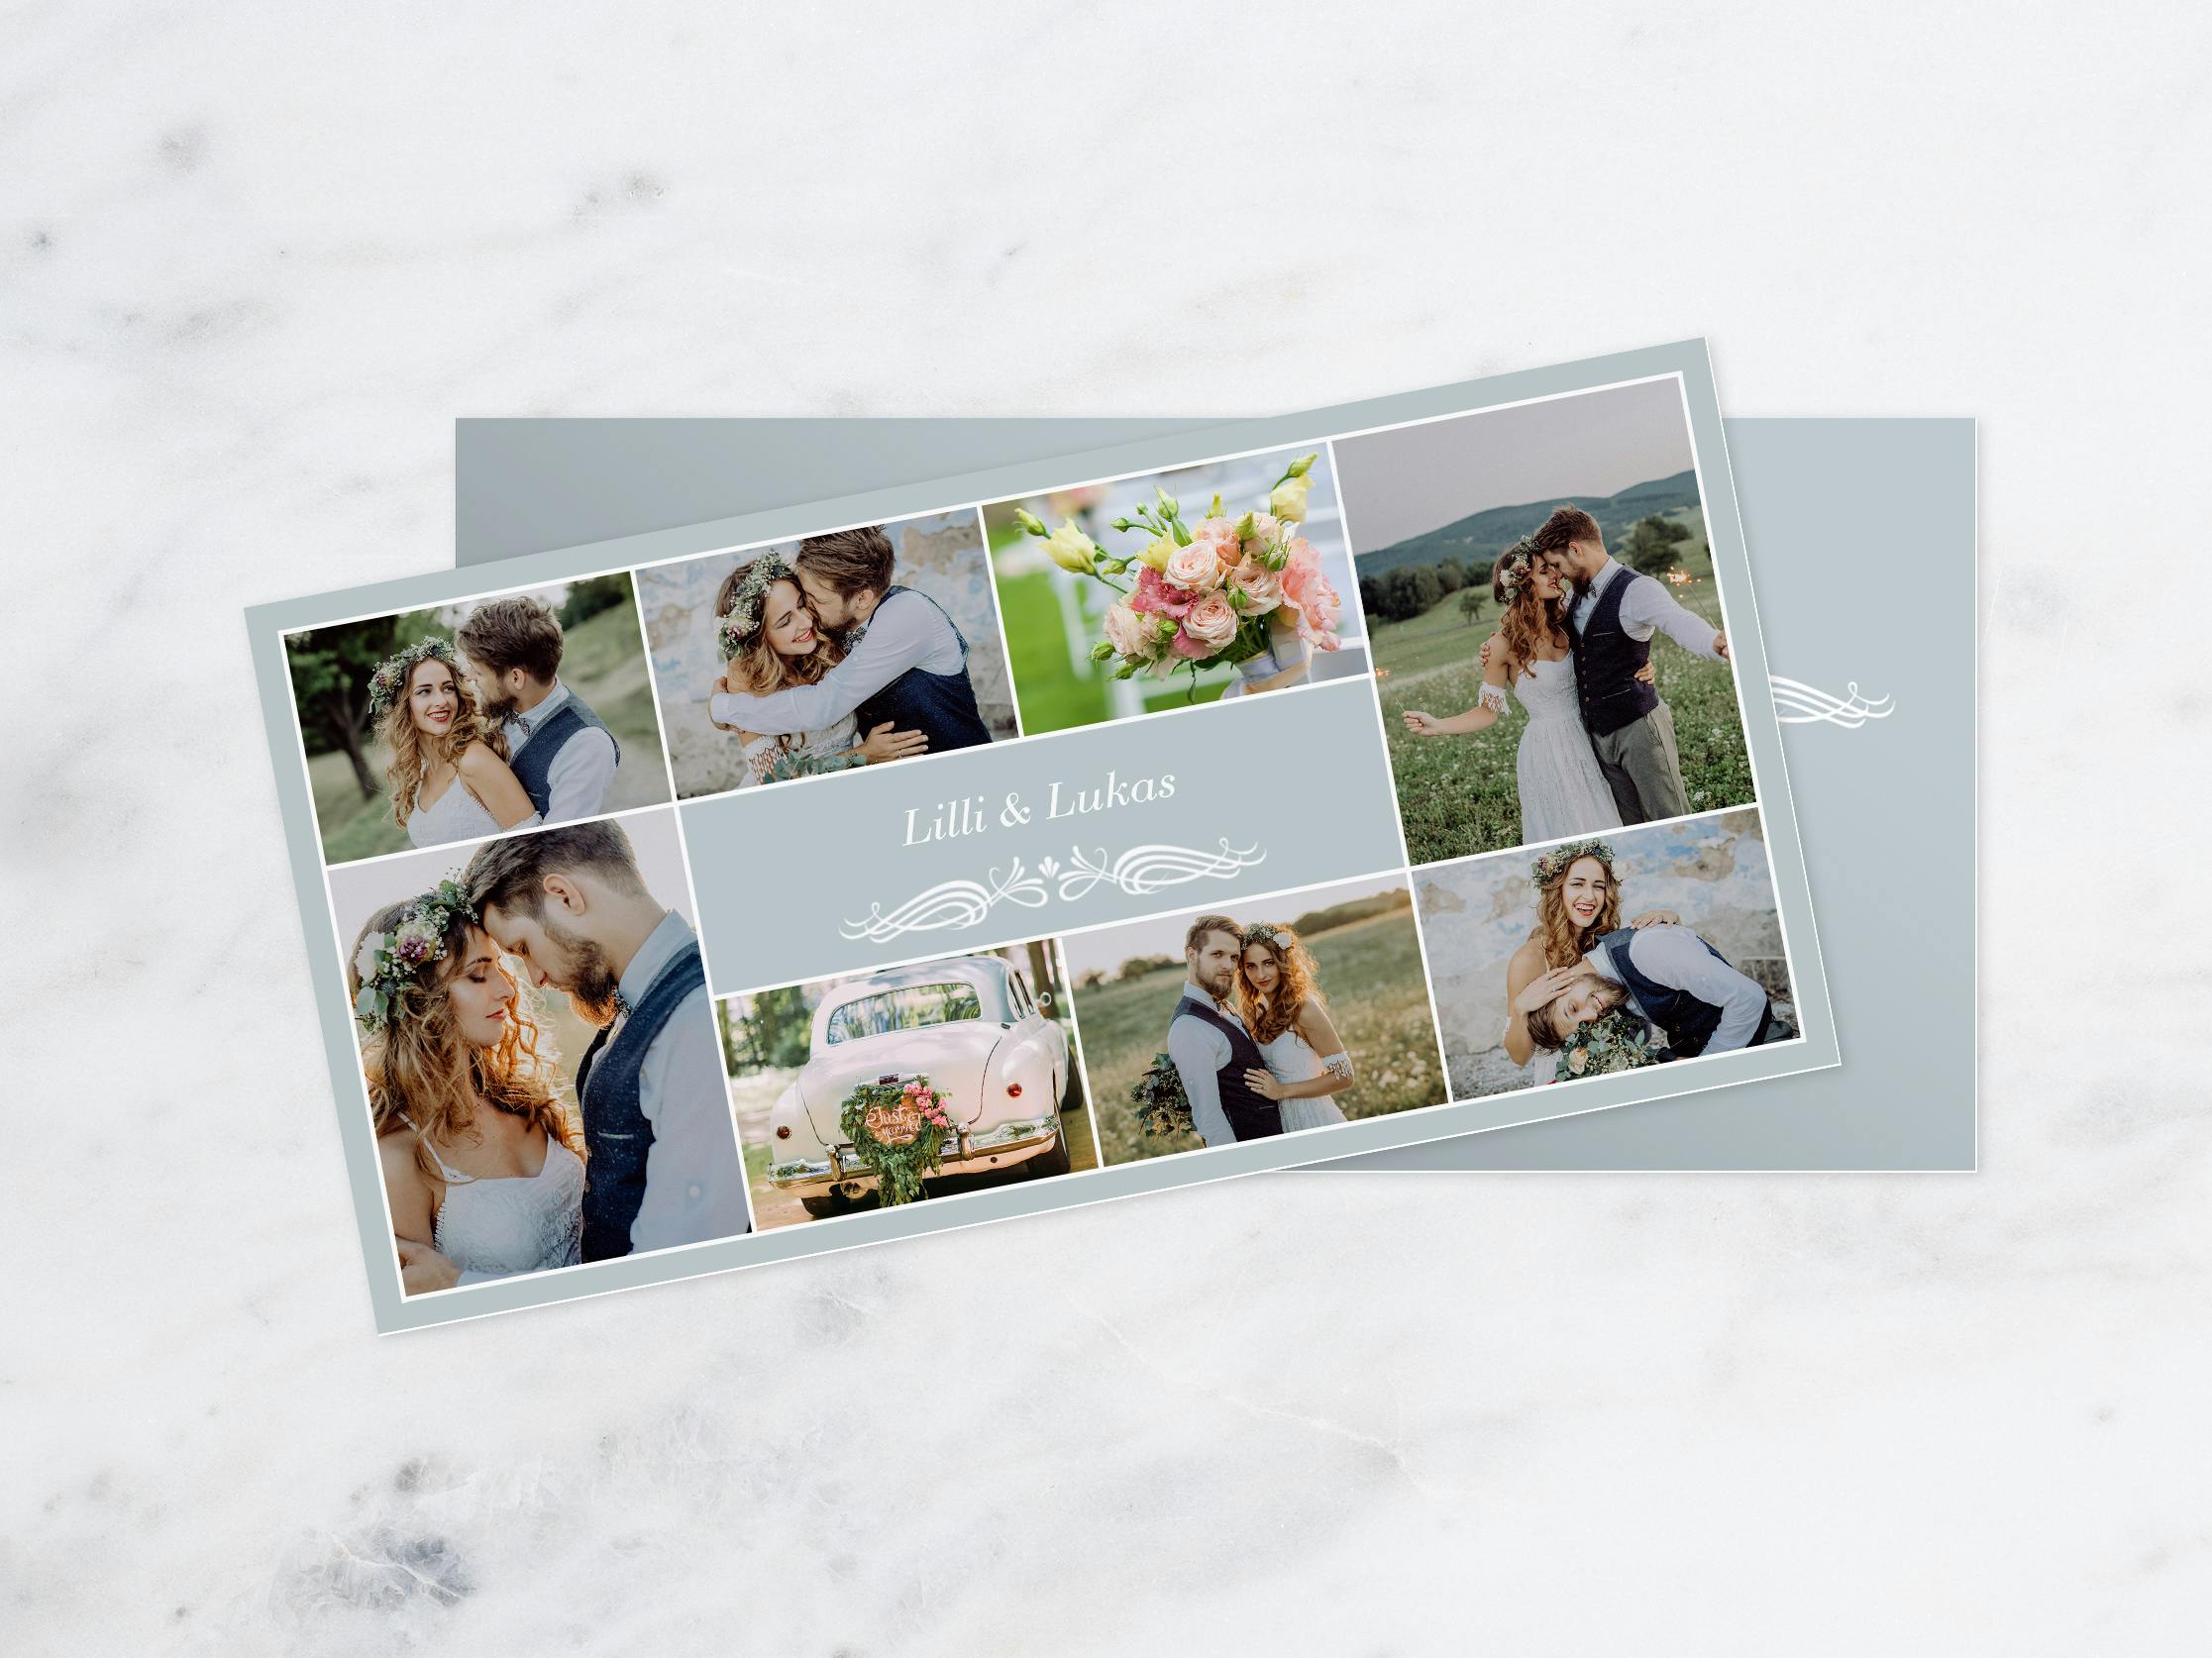 Fotogrußkarte mit Hochzeitsbildern und der Aufschrift "Lilli & Lukas"